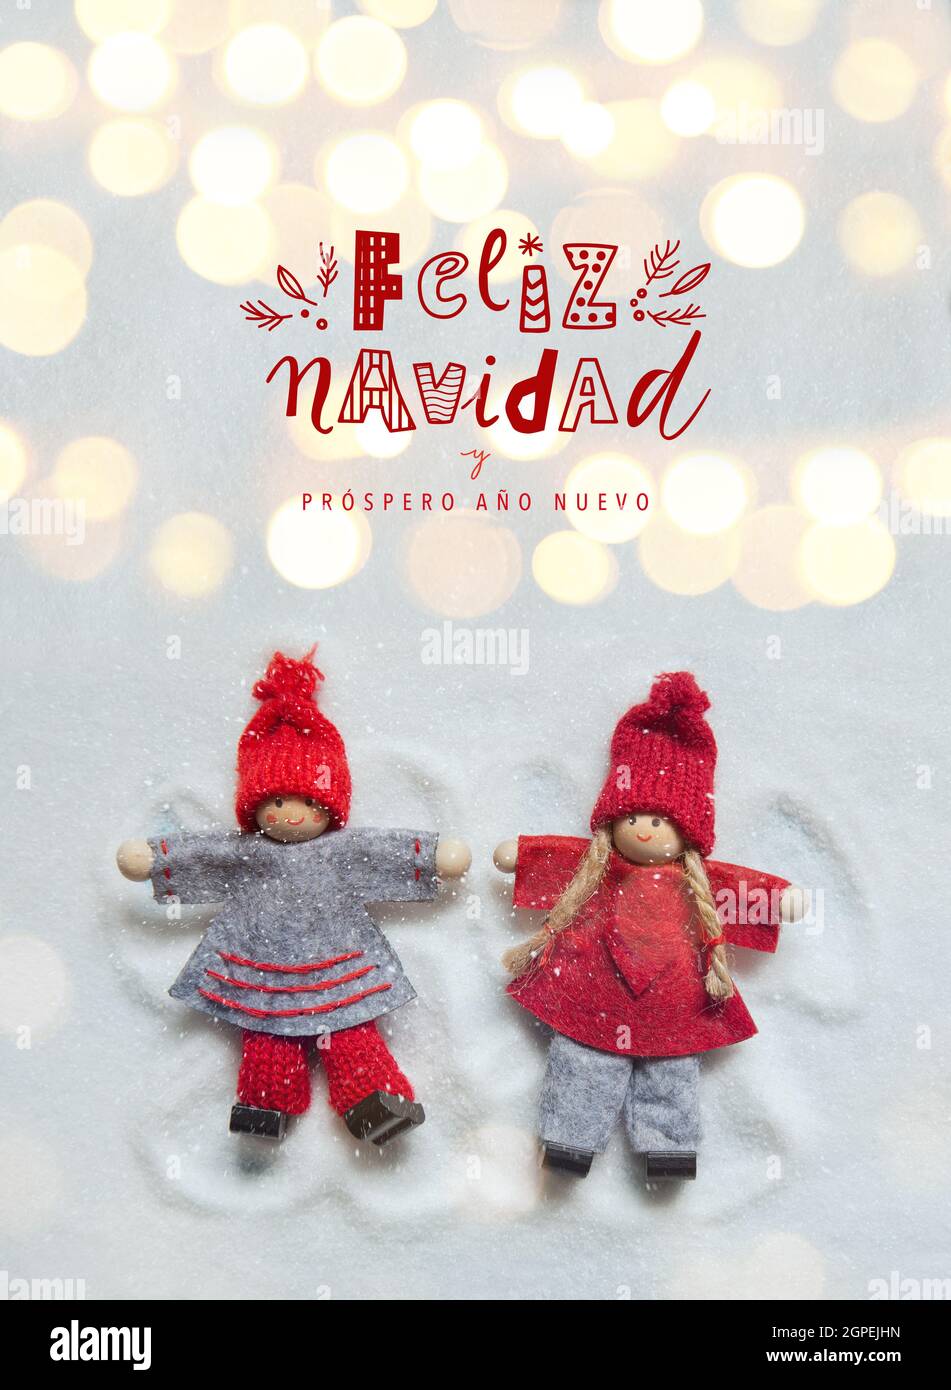 Tarjeta de felicitación de Navidad con pequeños adornos de muñecas de  Navidad que hacen ángeles en la nieve con luces bokeh. Feliz Navidad letras  graciosas de la escritura a mano Fotografía de